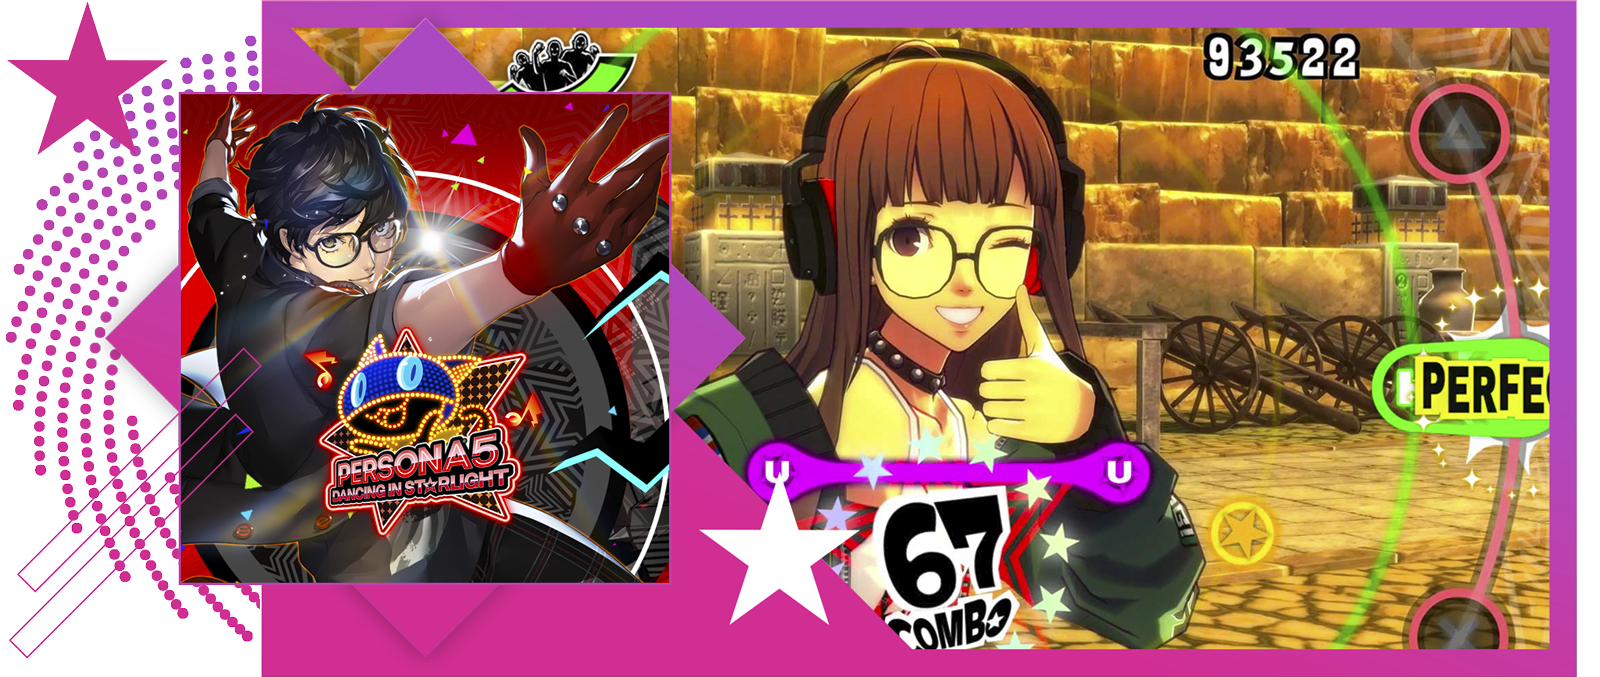 Afbeelding van De beste ritmegames met key-art en gameplay van Persona 5: Dancing in Starlight.